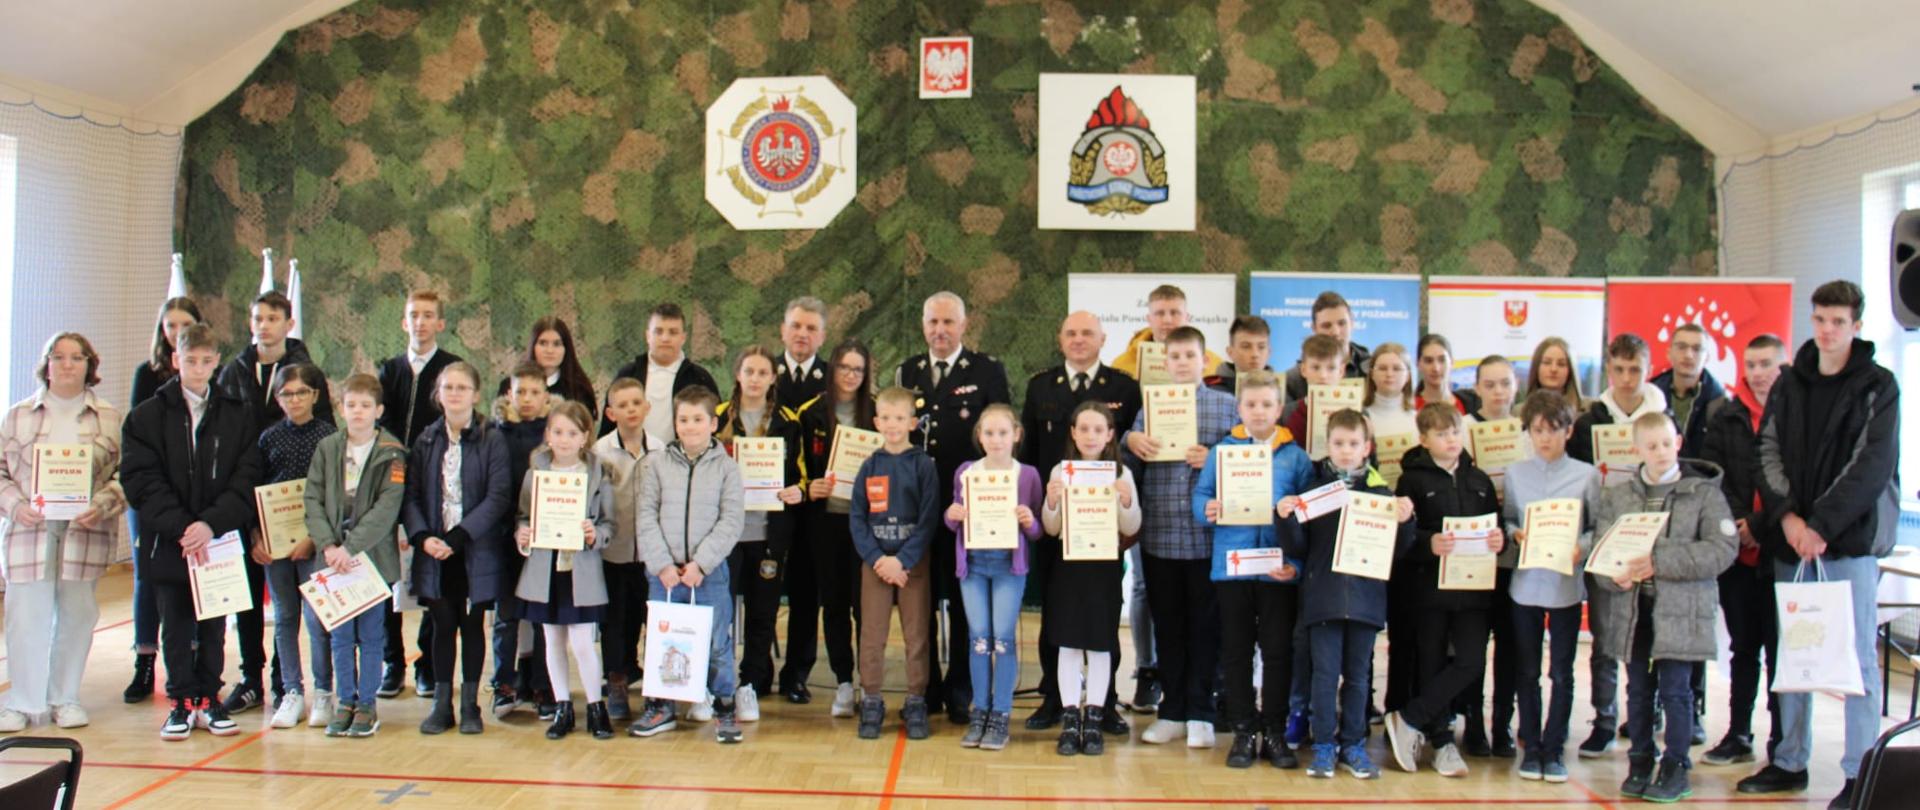 Zdjęcie ukazuje dzieci zgromadzone na sali gimnastycznej stojące i trzymające w rękach dyplomy i nagrody za uczestnictwo w etapie powiatowym Ogólnopolskiego Turnieju Wiedzy Pożarniczej. Z tyłu stoją przedstawiciele PSP i OSP .